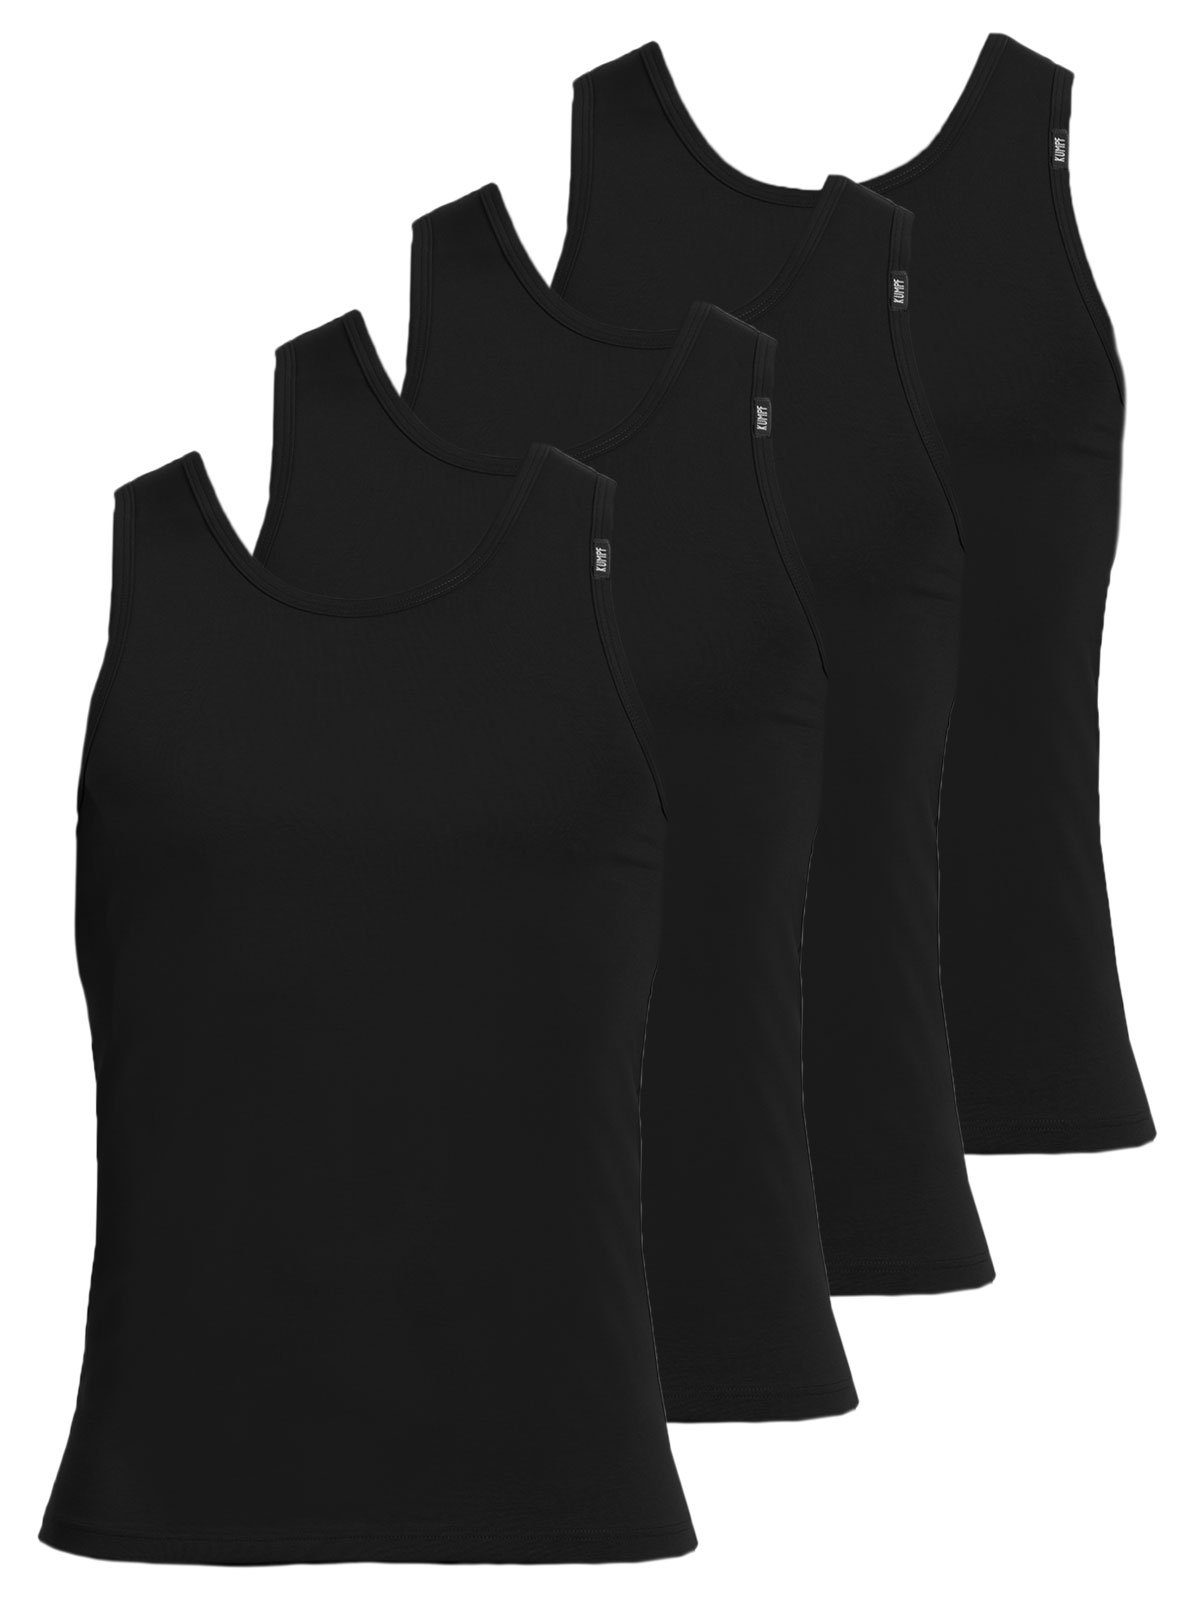 KUMPF Achselhemd 4er Sparpack Herren Unterhemd Bio Cotton (Spar-Set, 4-St) hohe Markenqualität schwarz